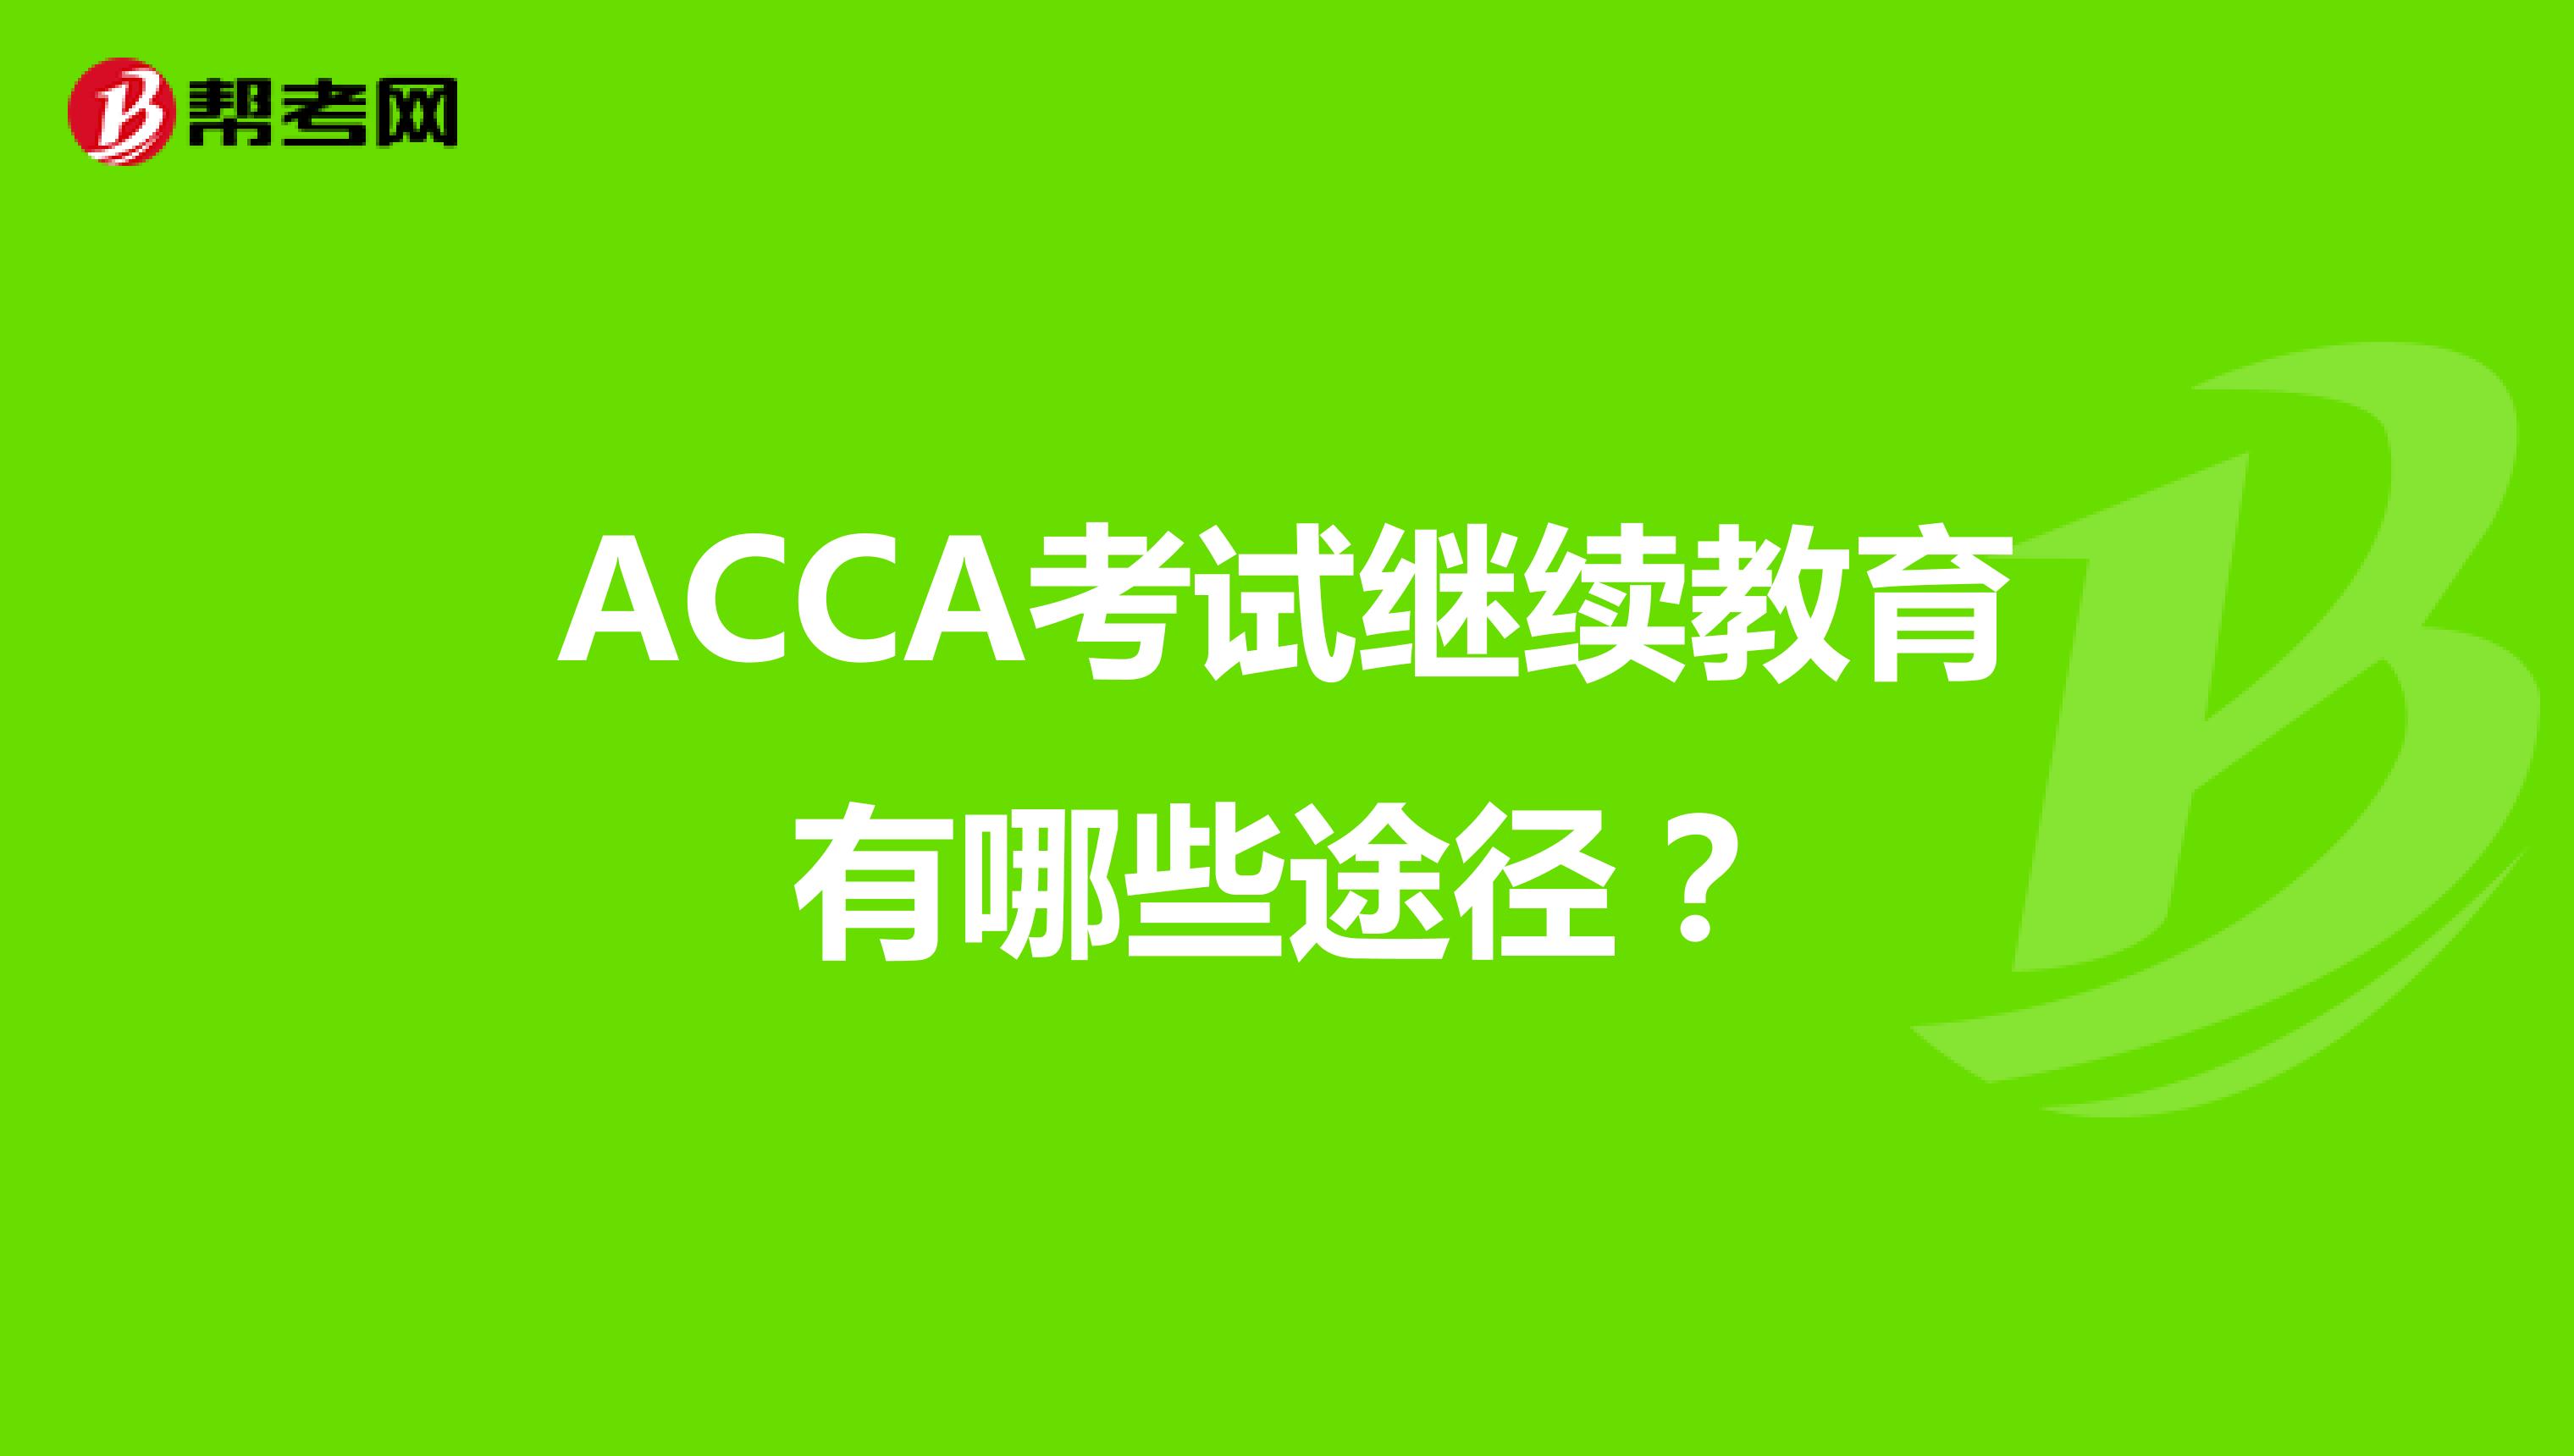 ACCA考试继续教育有哪些途径？